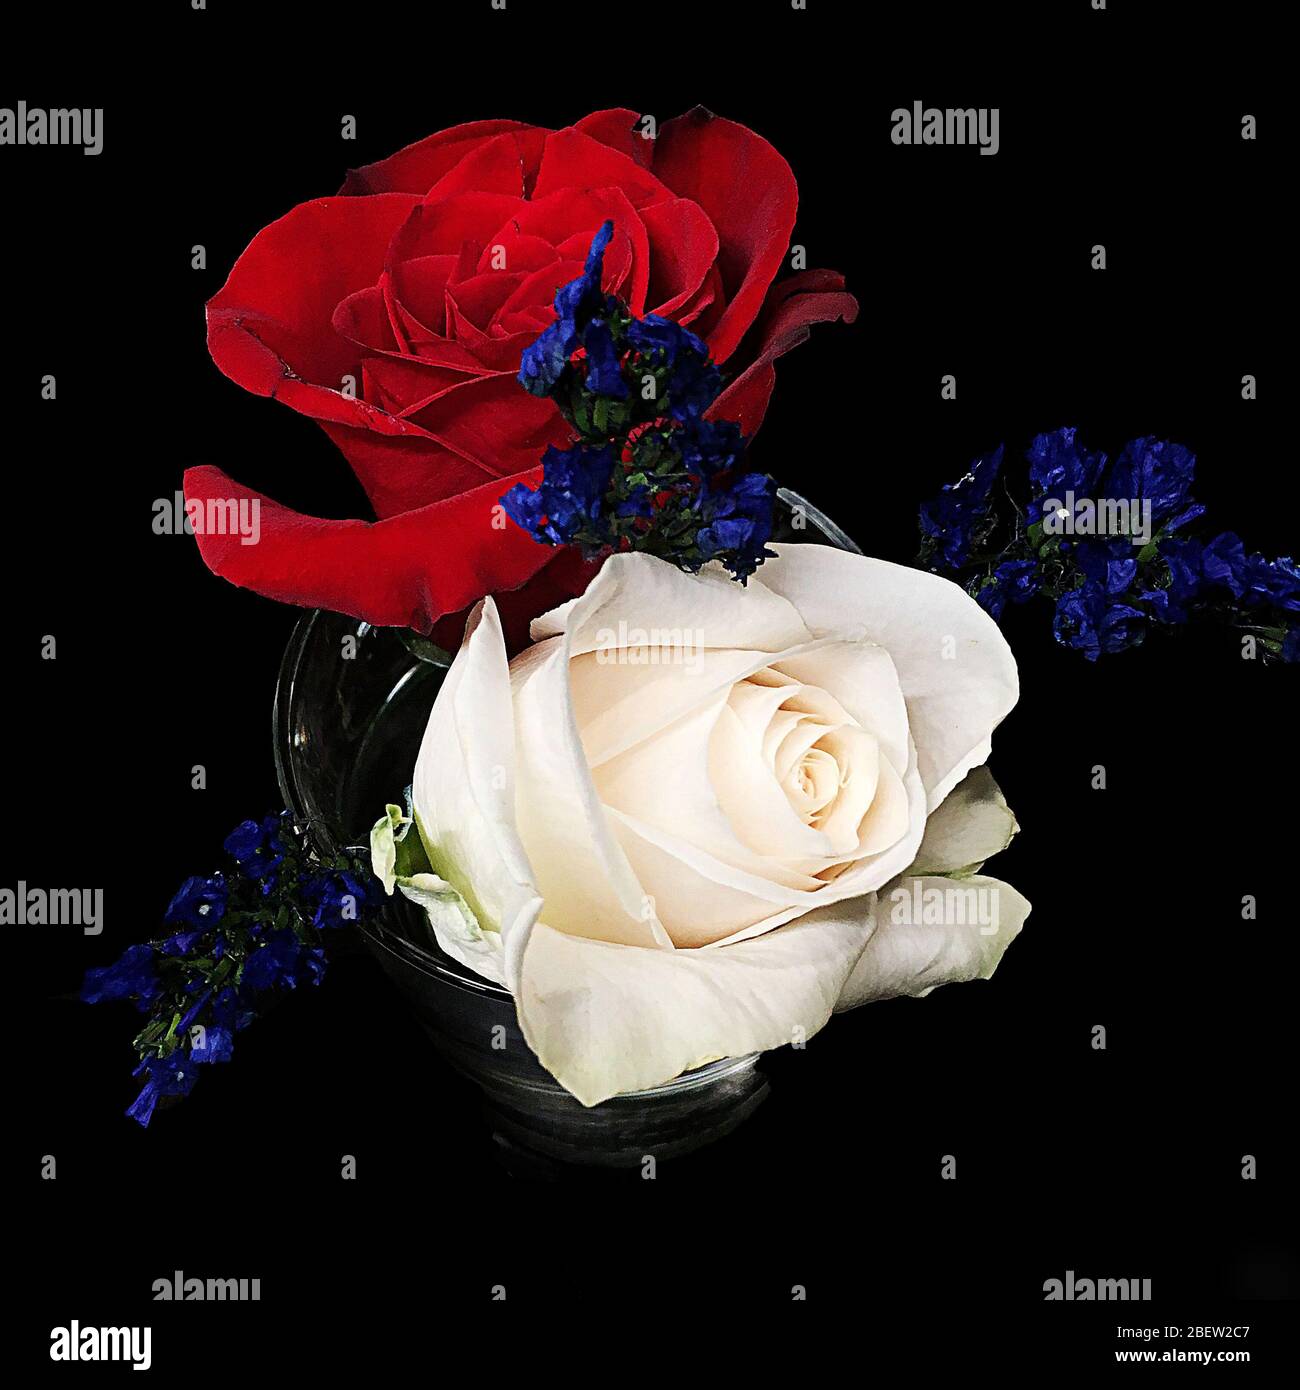 Roses rouges et blanches avec petites fleurs violettes sur fond noir Banque D'Images